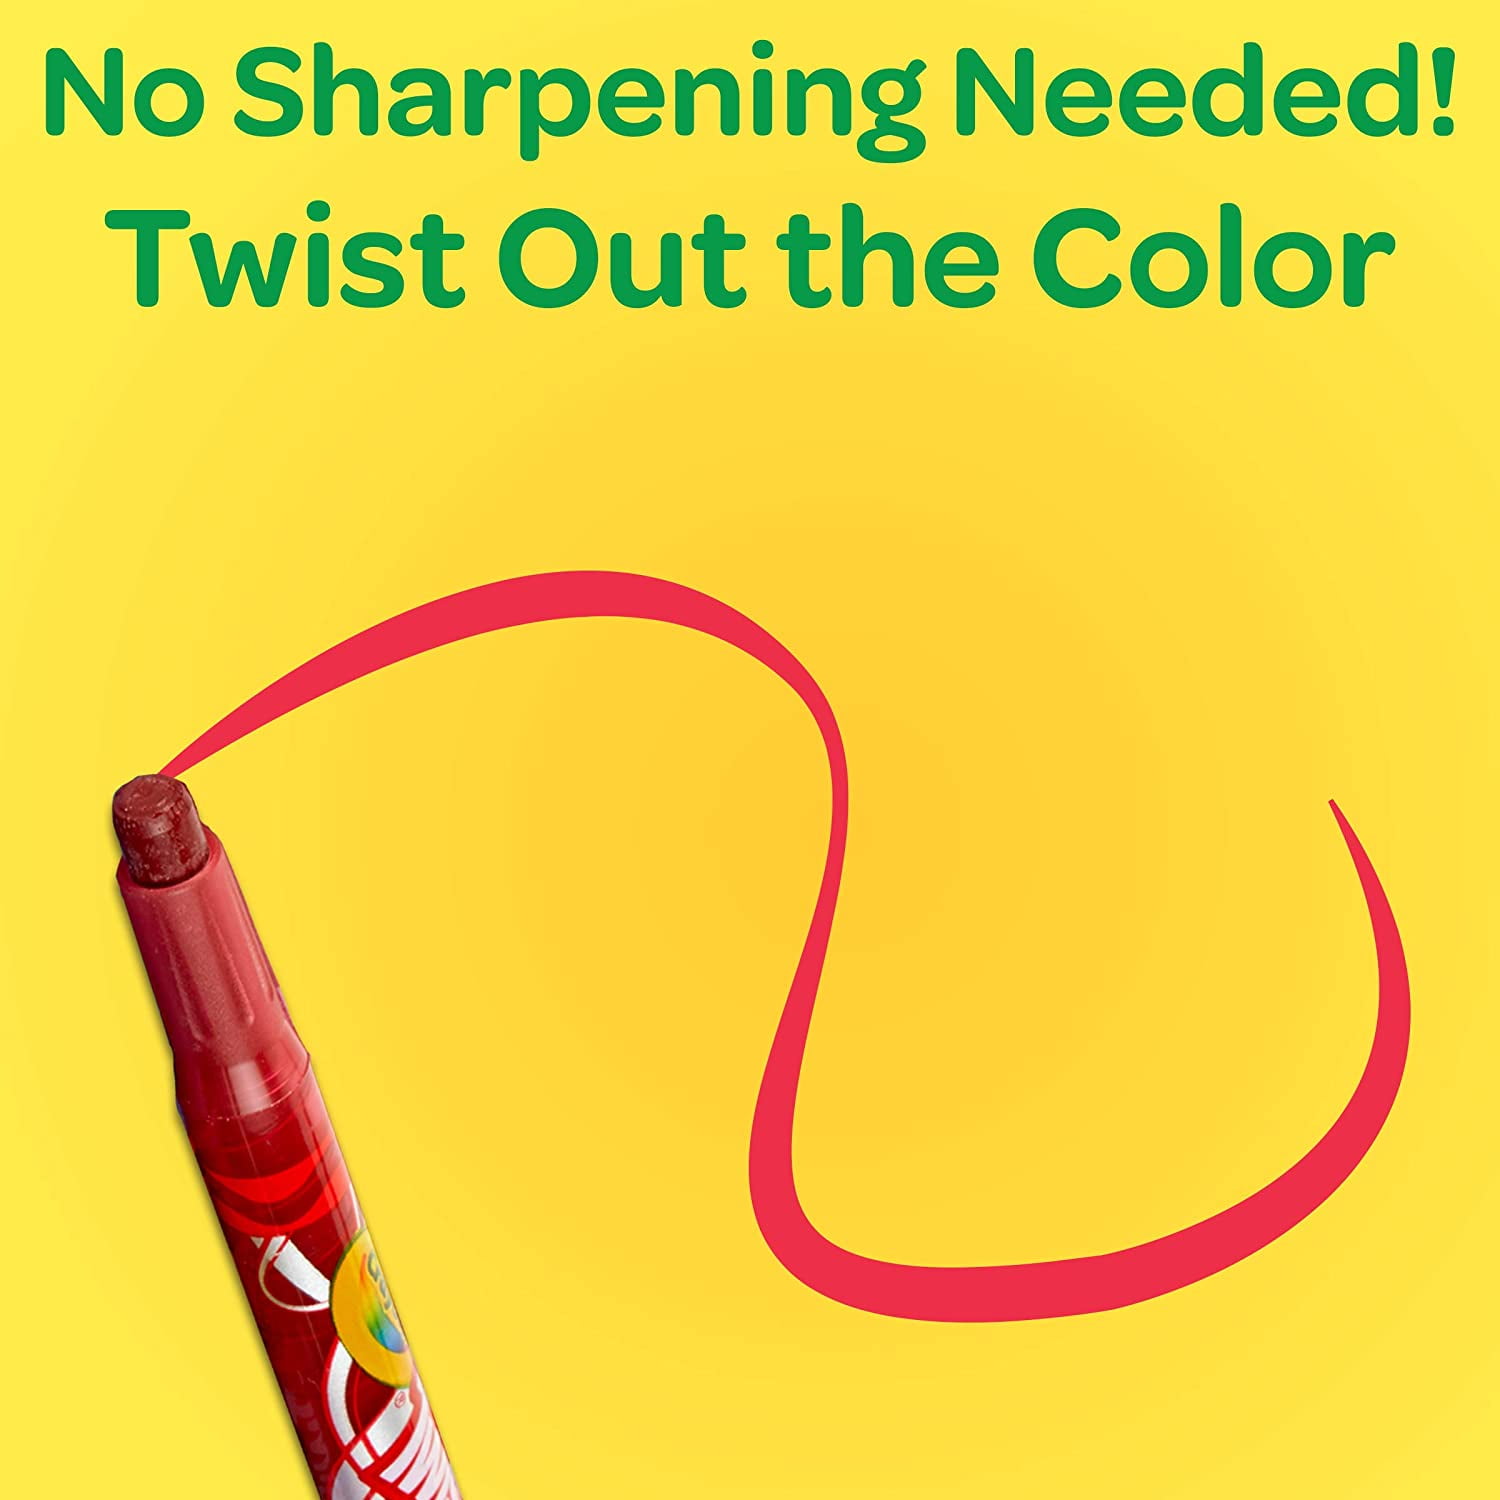 Crayola Twistable Colored Pencils (50 Pieces) 